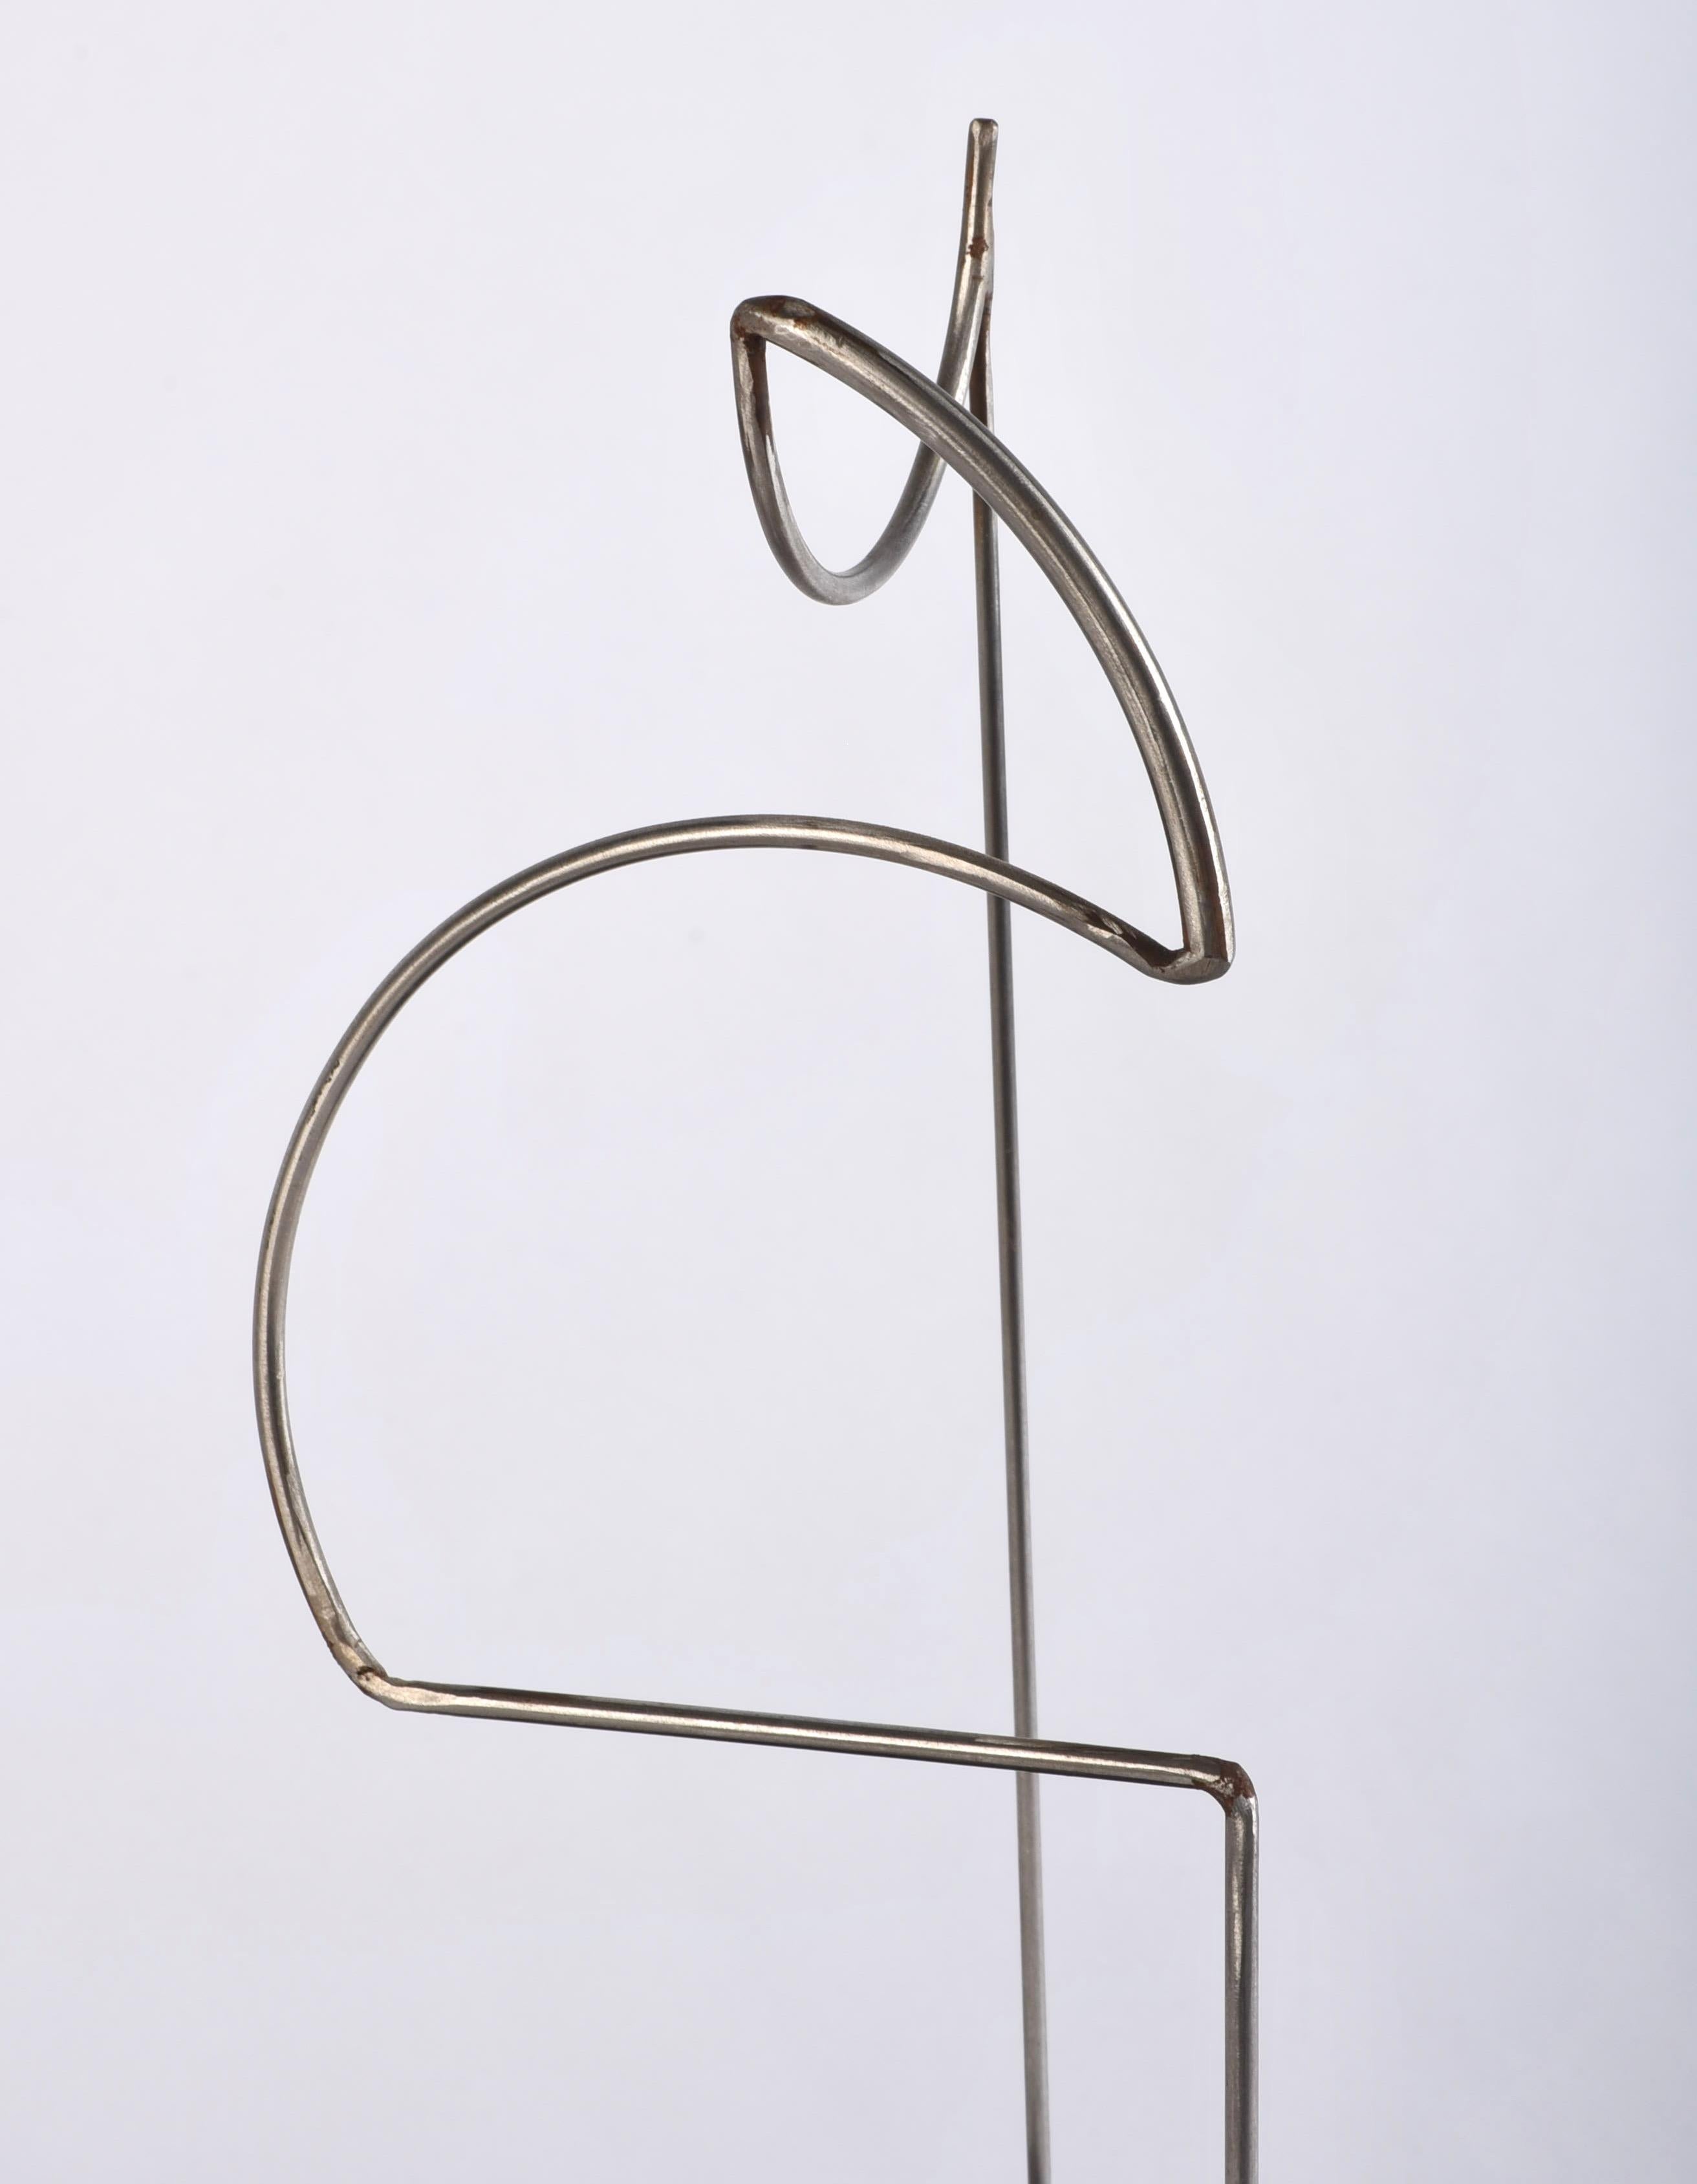 Lovely minimalist sculpture by Jerry Meatyard.  